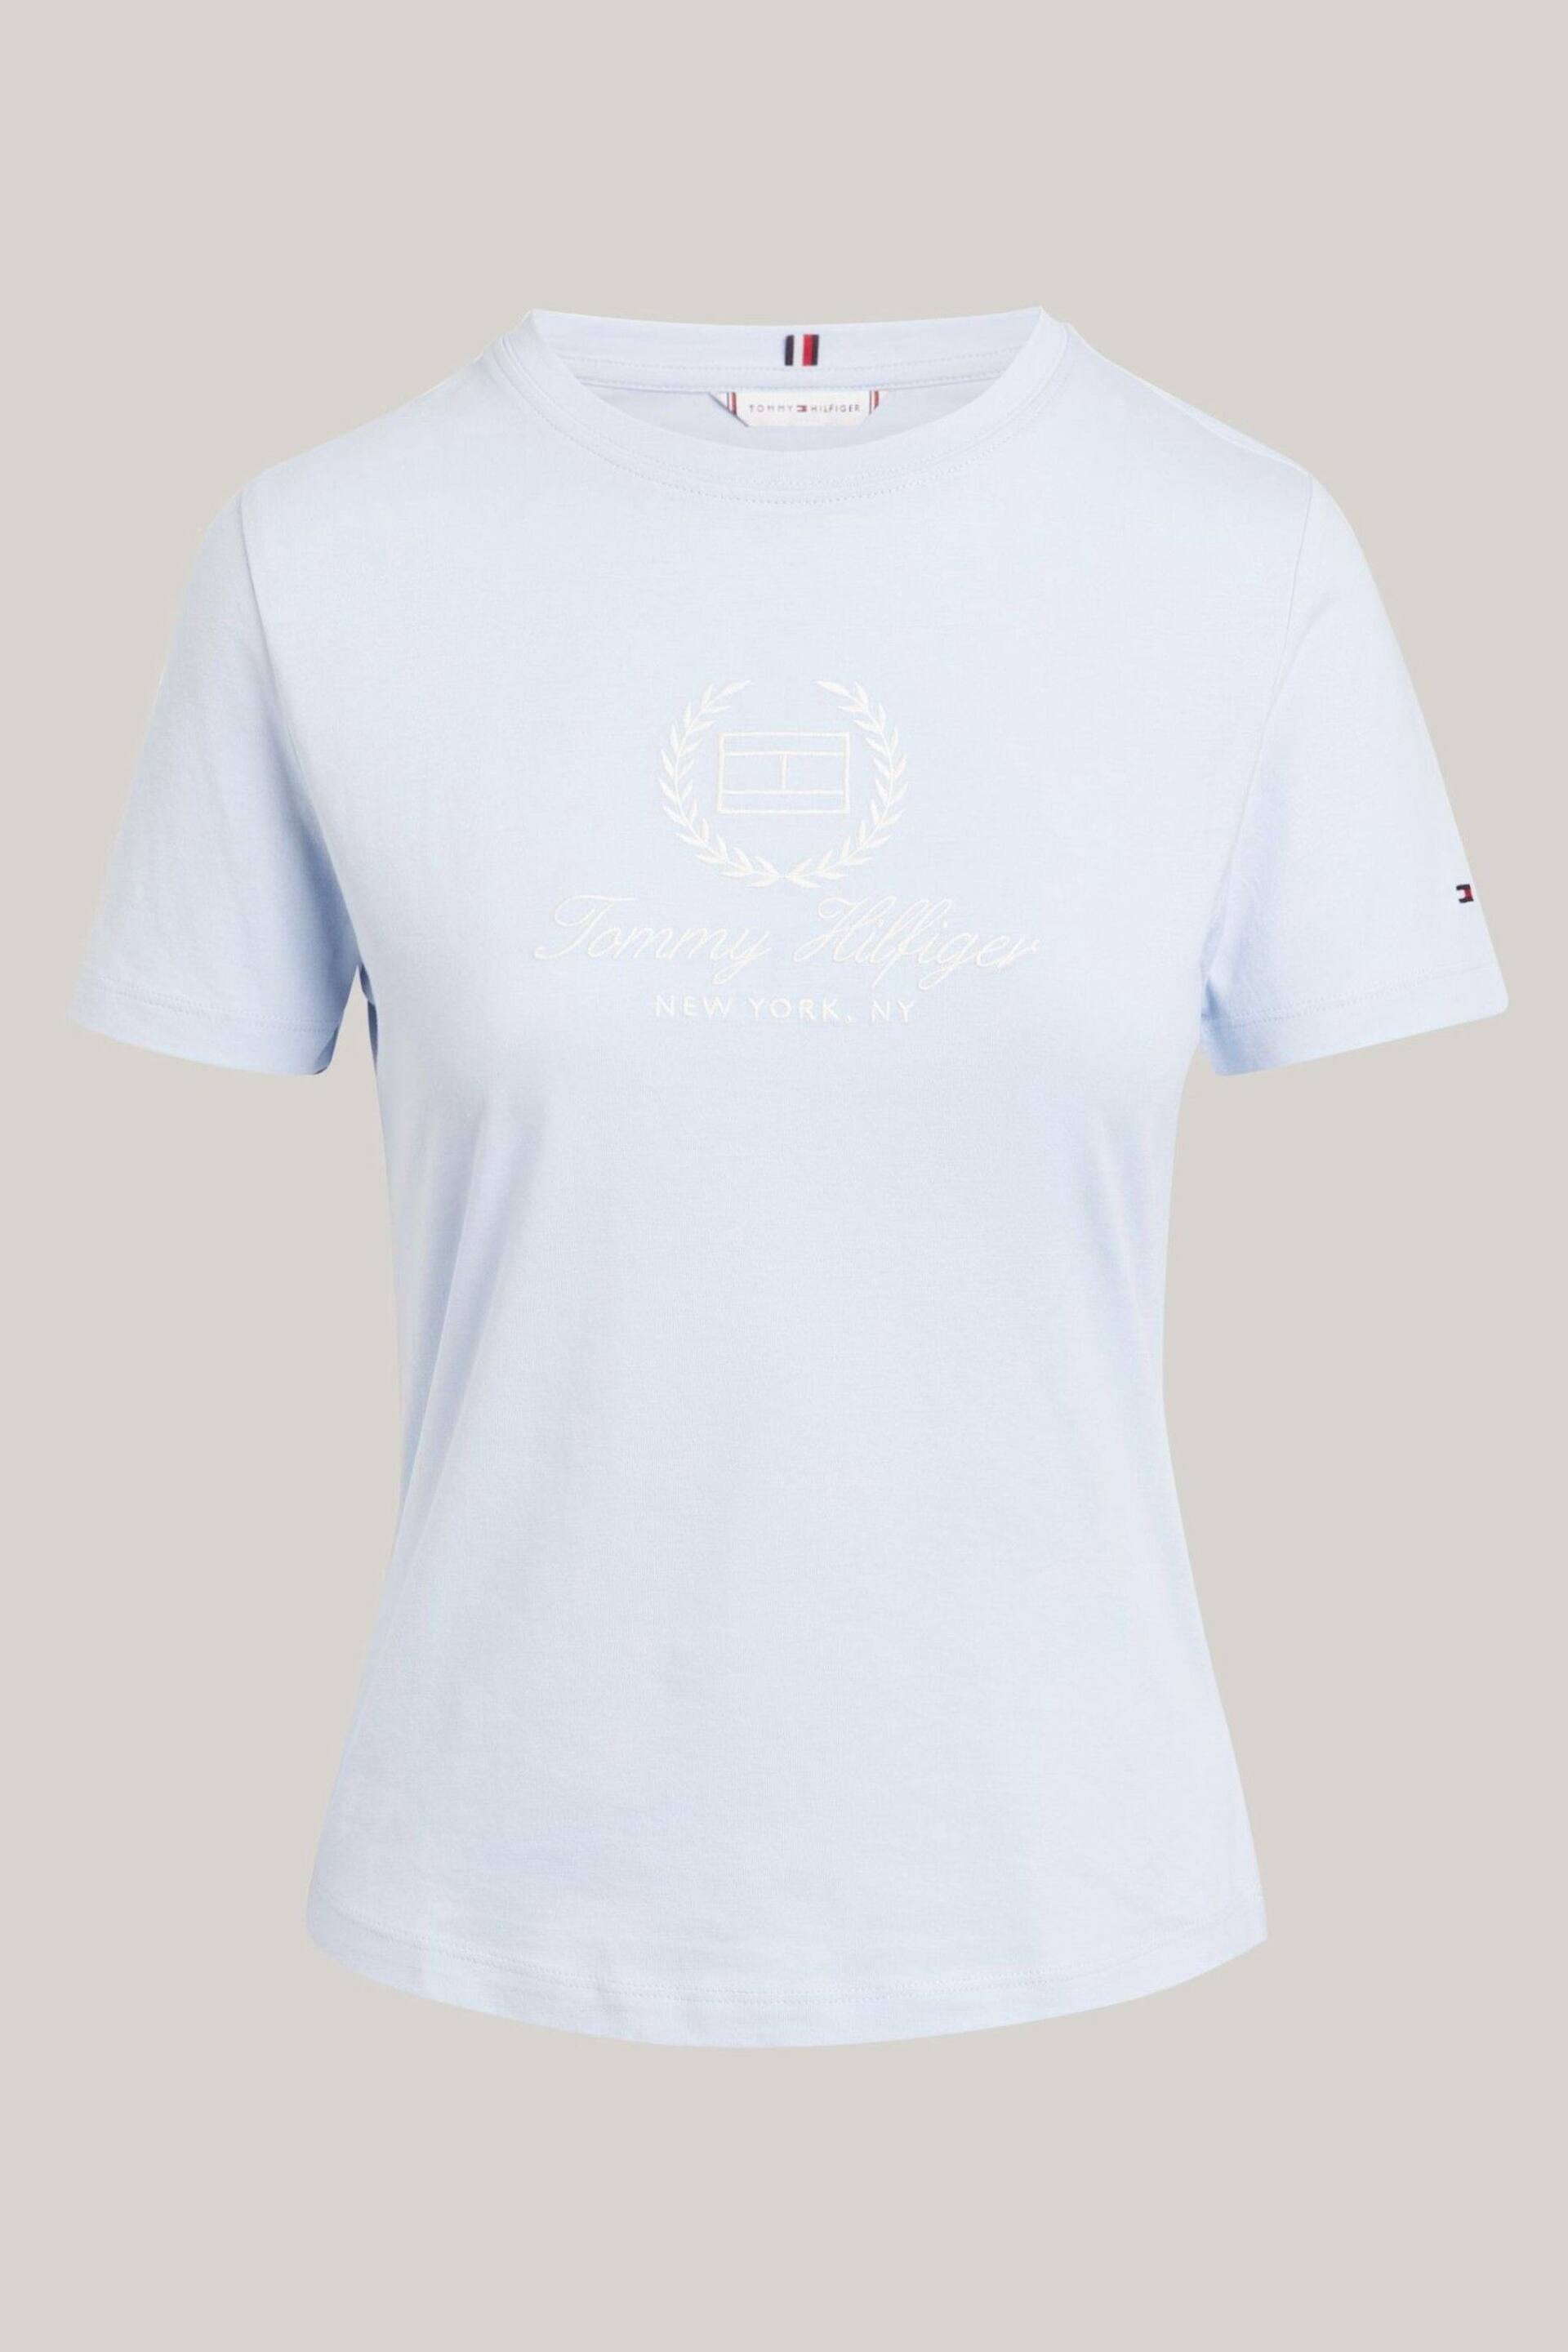 Tommy Hilfiger Crest Logo T-Shirt - Image 5 of 5